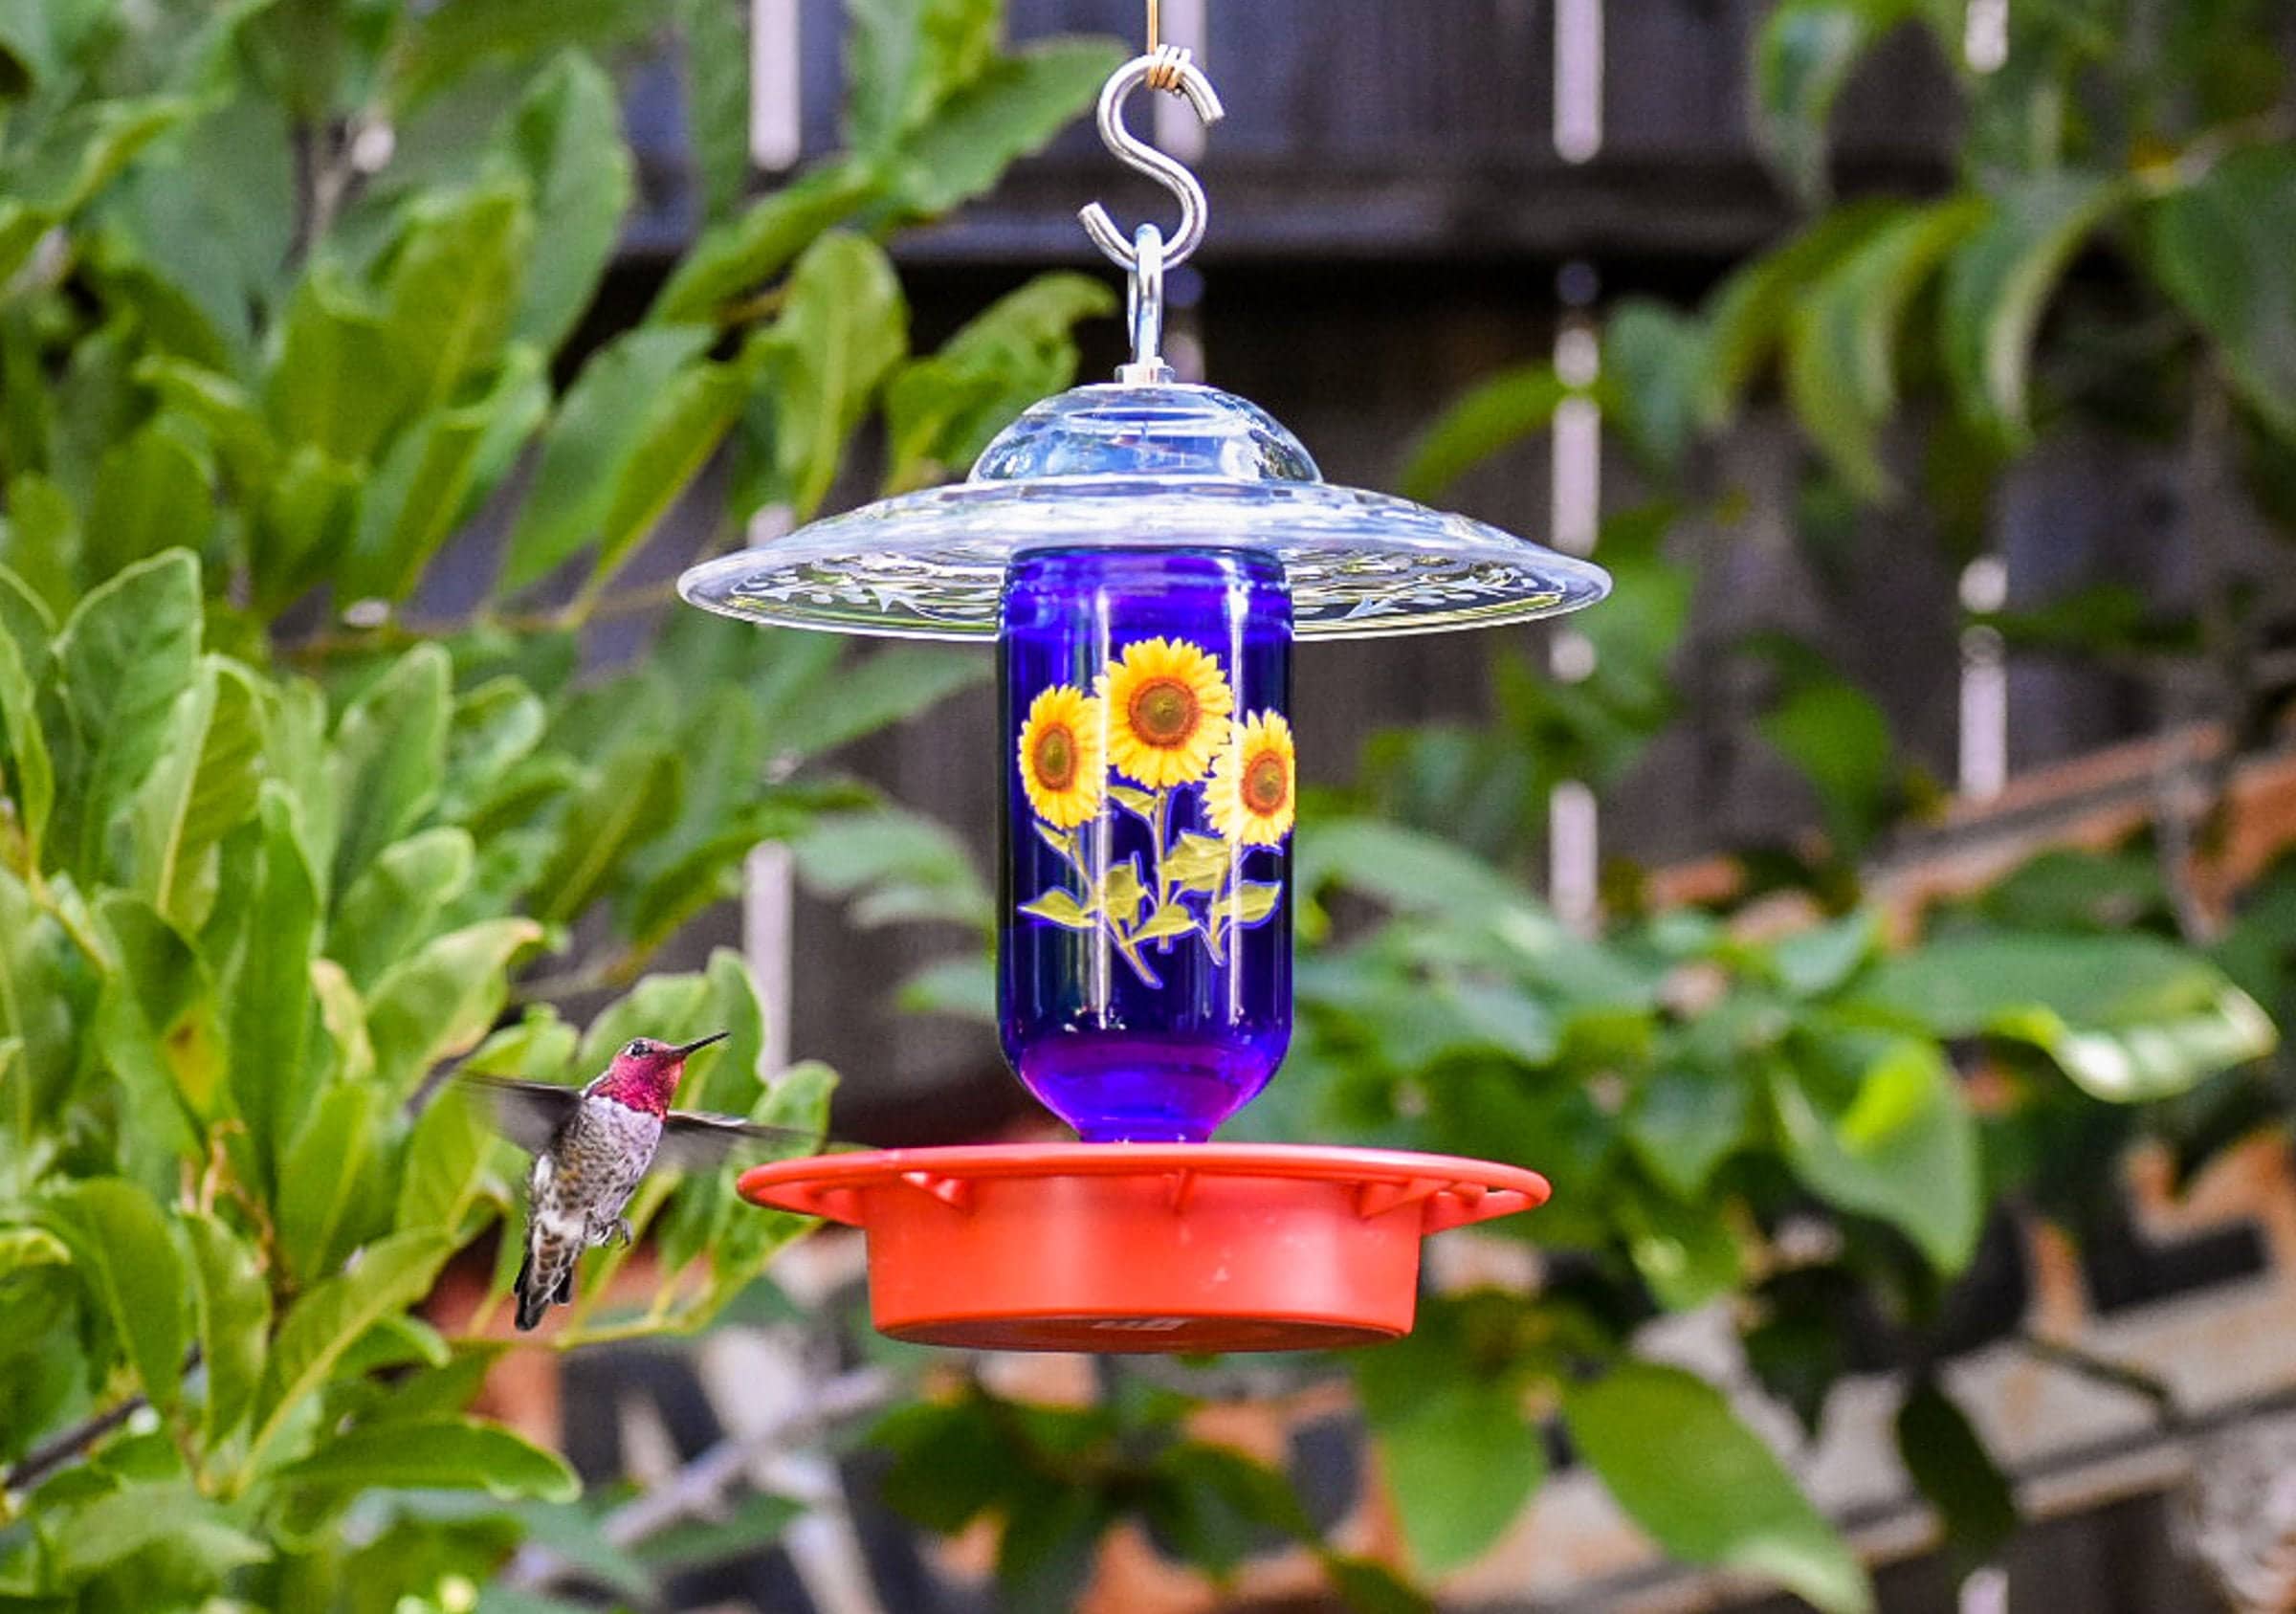 HSHD Solar Lighthouse Bird Feeder with Rotating Beacon Lamp - 14 Hanging  Mesh Wild Bird Feeders for Outdoor Garden Patio Lawn Decor (Retro)